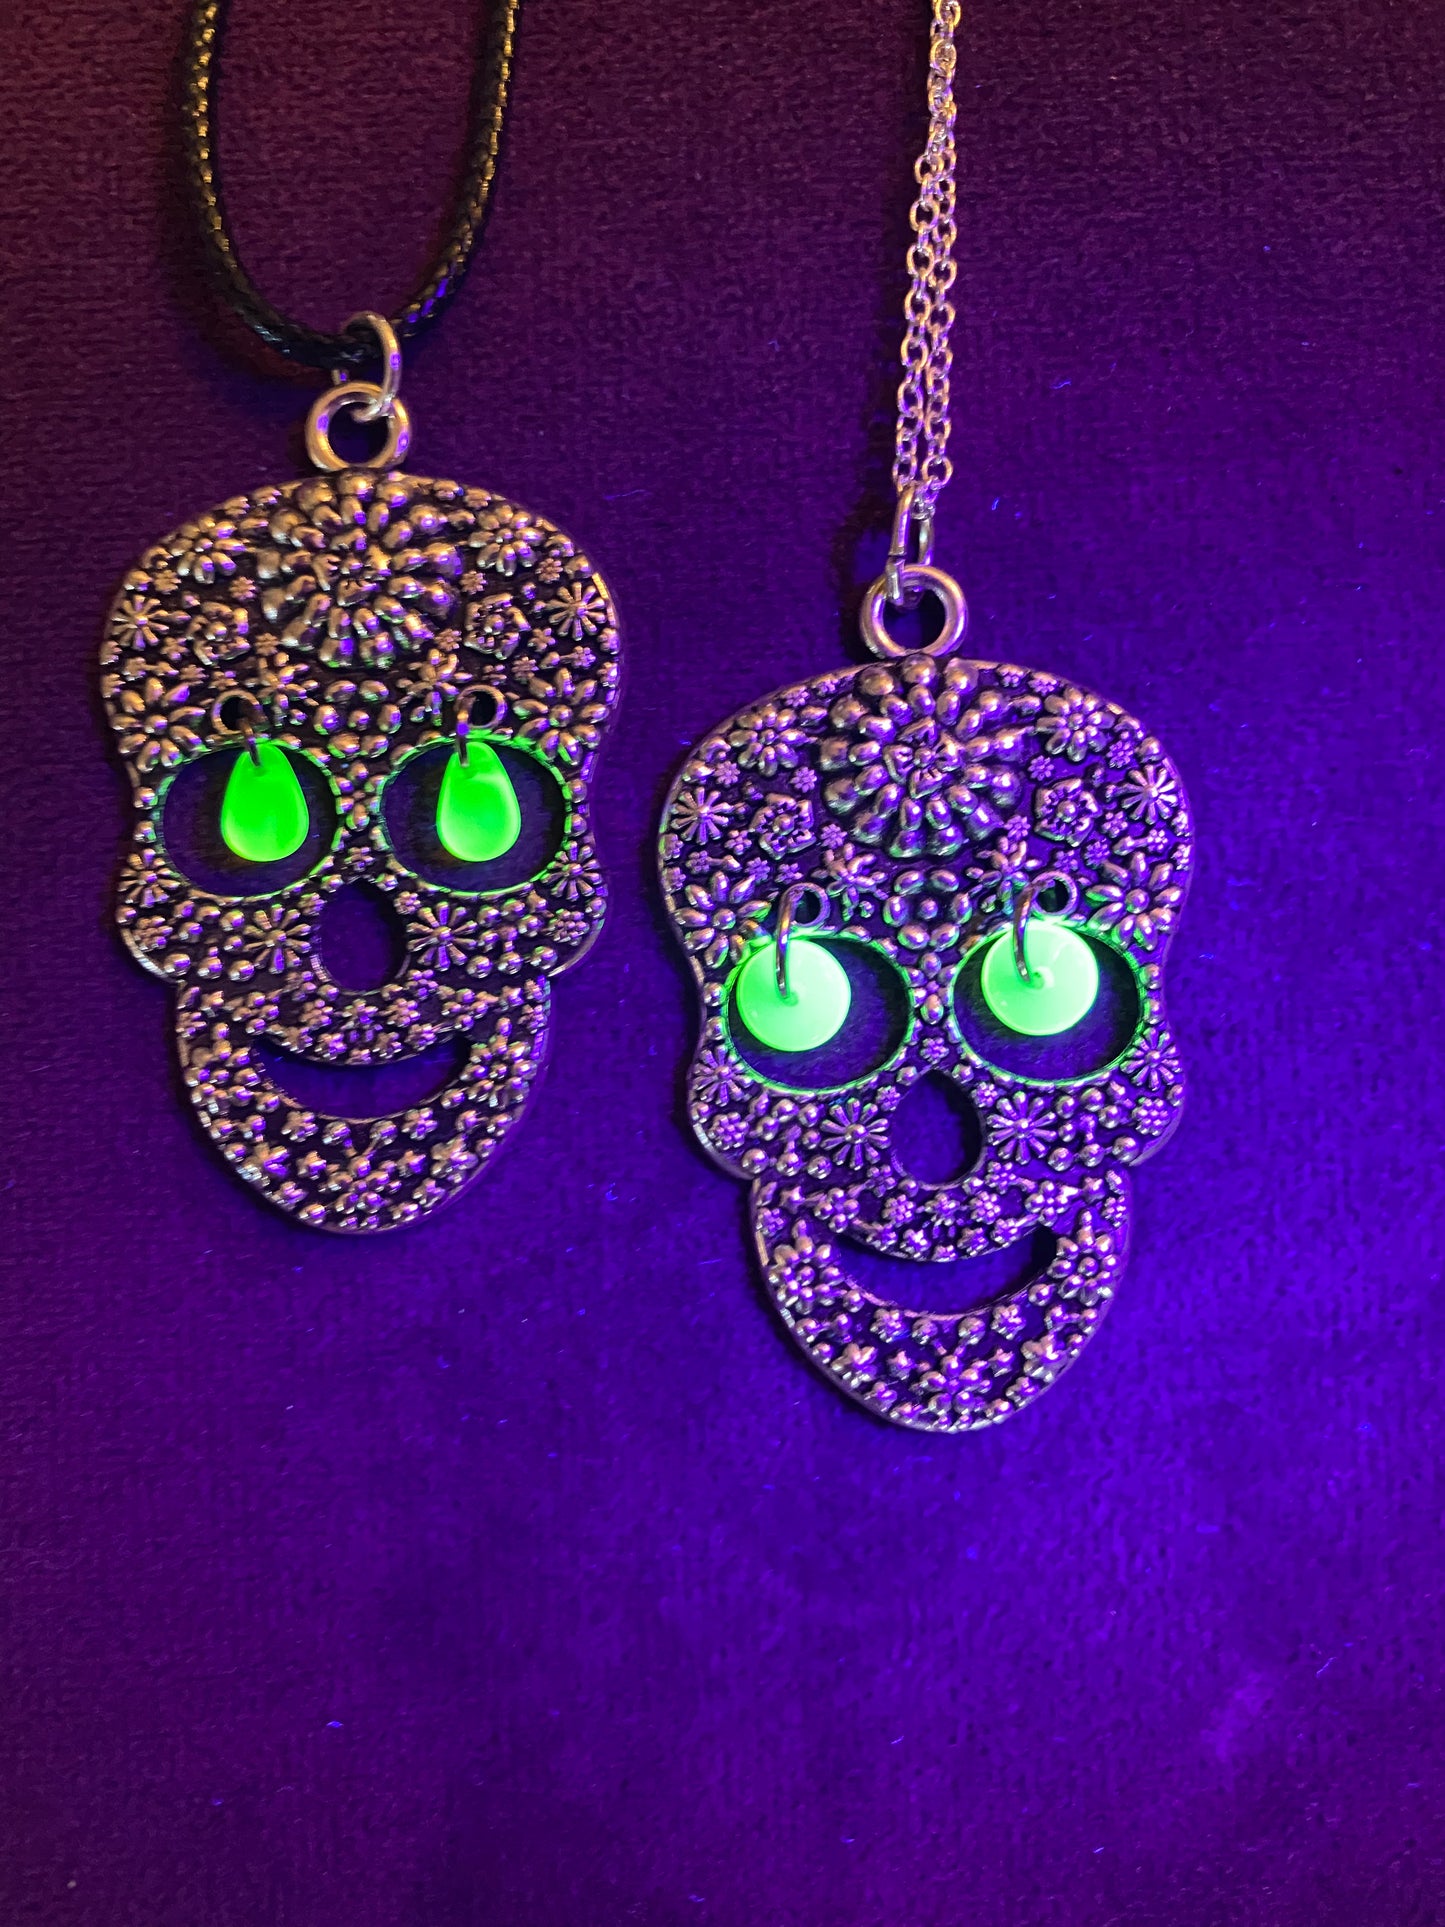 Uranium glass skull necklace